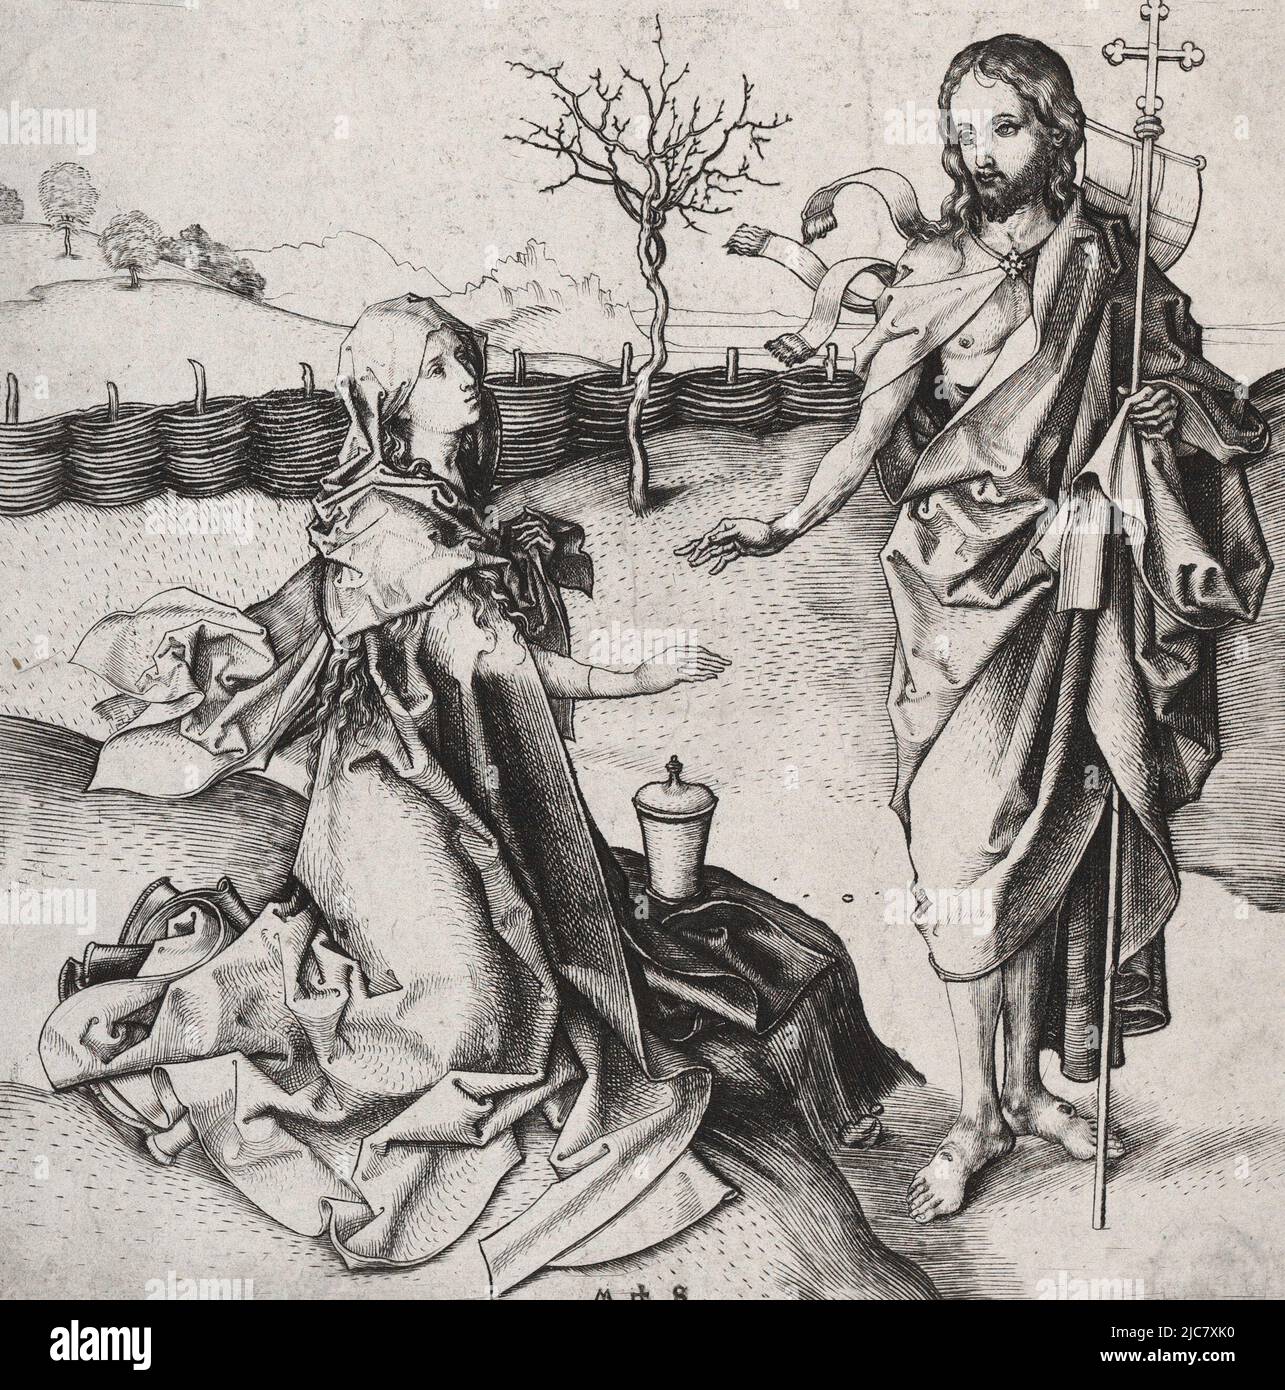 Noli me tangere de Martin Schongauer (1450-1491). Cette peinture dépeint le moment où Marie Magdelene reconnaît le Jésus ressuscité. Elle atteint pour lui, mais il lui demande de ne pas le toucher (Noli me tangere) car il n'est pas encore monté au ciel. Banque D'Images